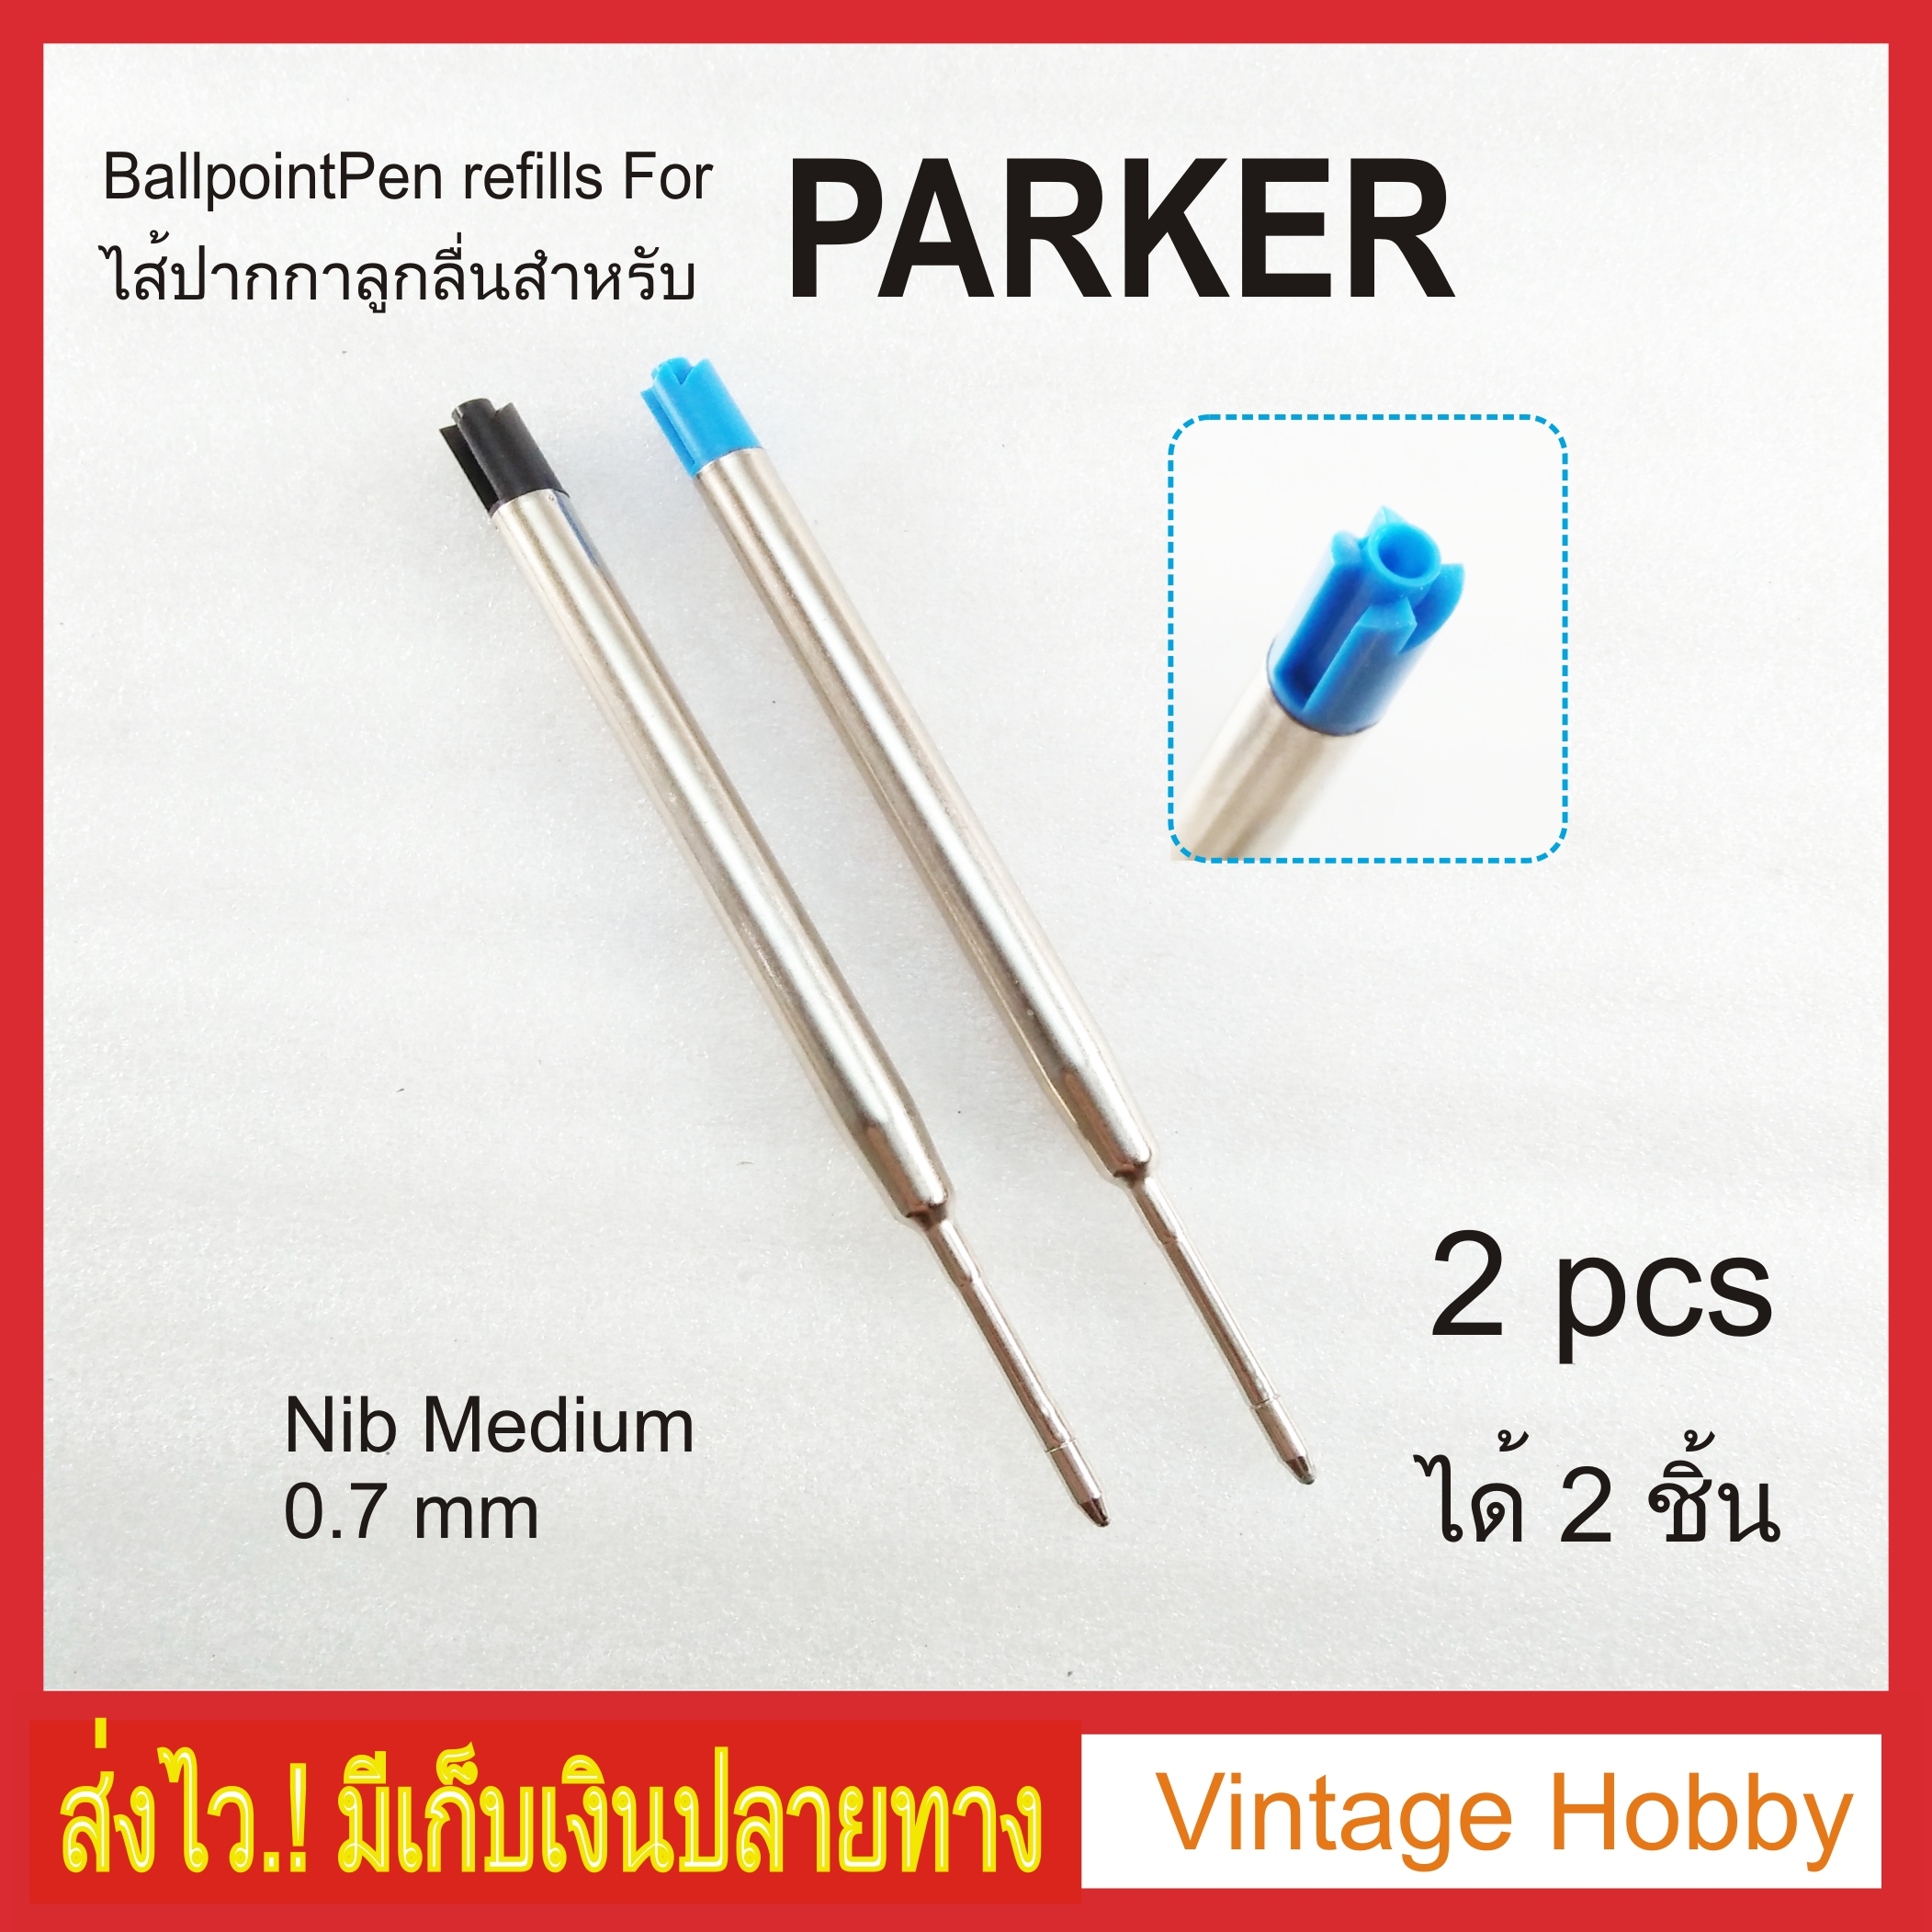 ไส้ปากกาลูกลื่น แบบปากกา Parker หรือ Parker type Ballpoint Refill ได้ 2 อัน เลือกสีได้